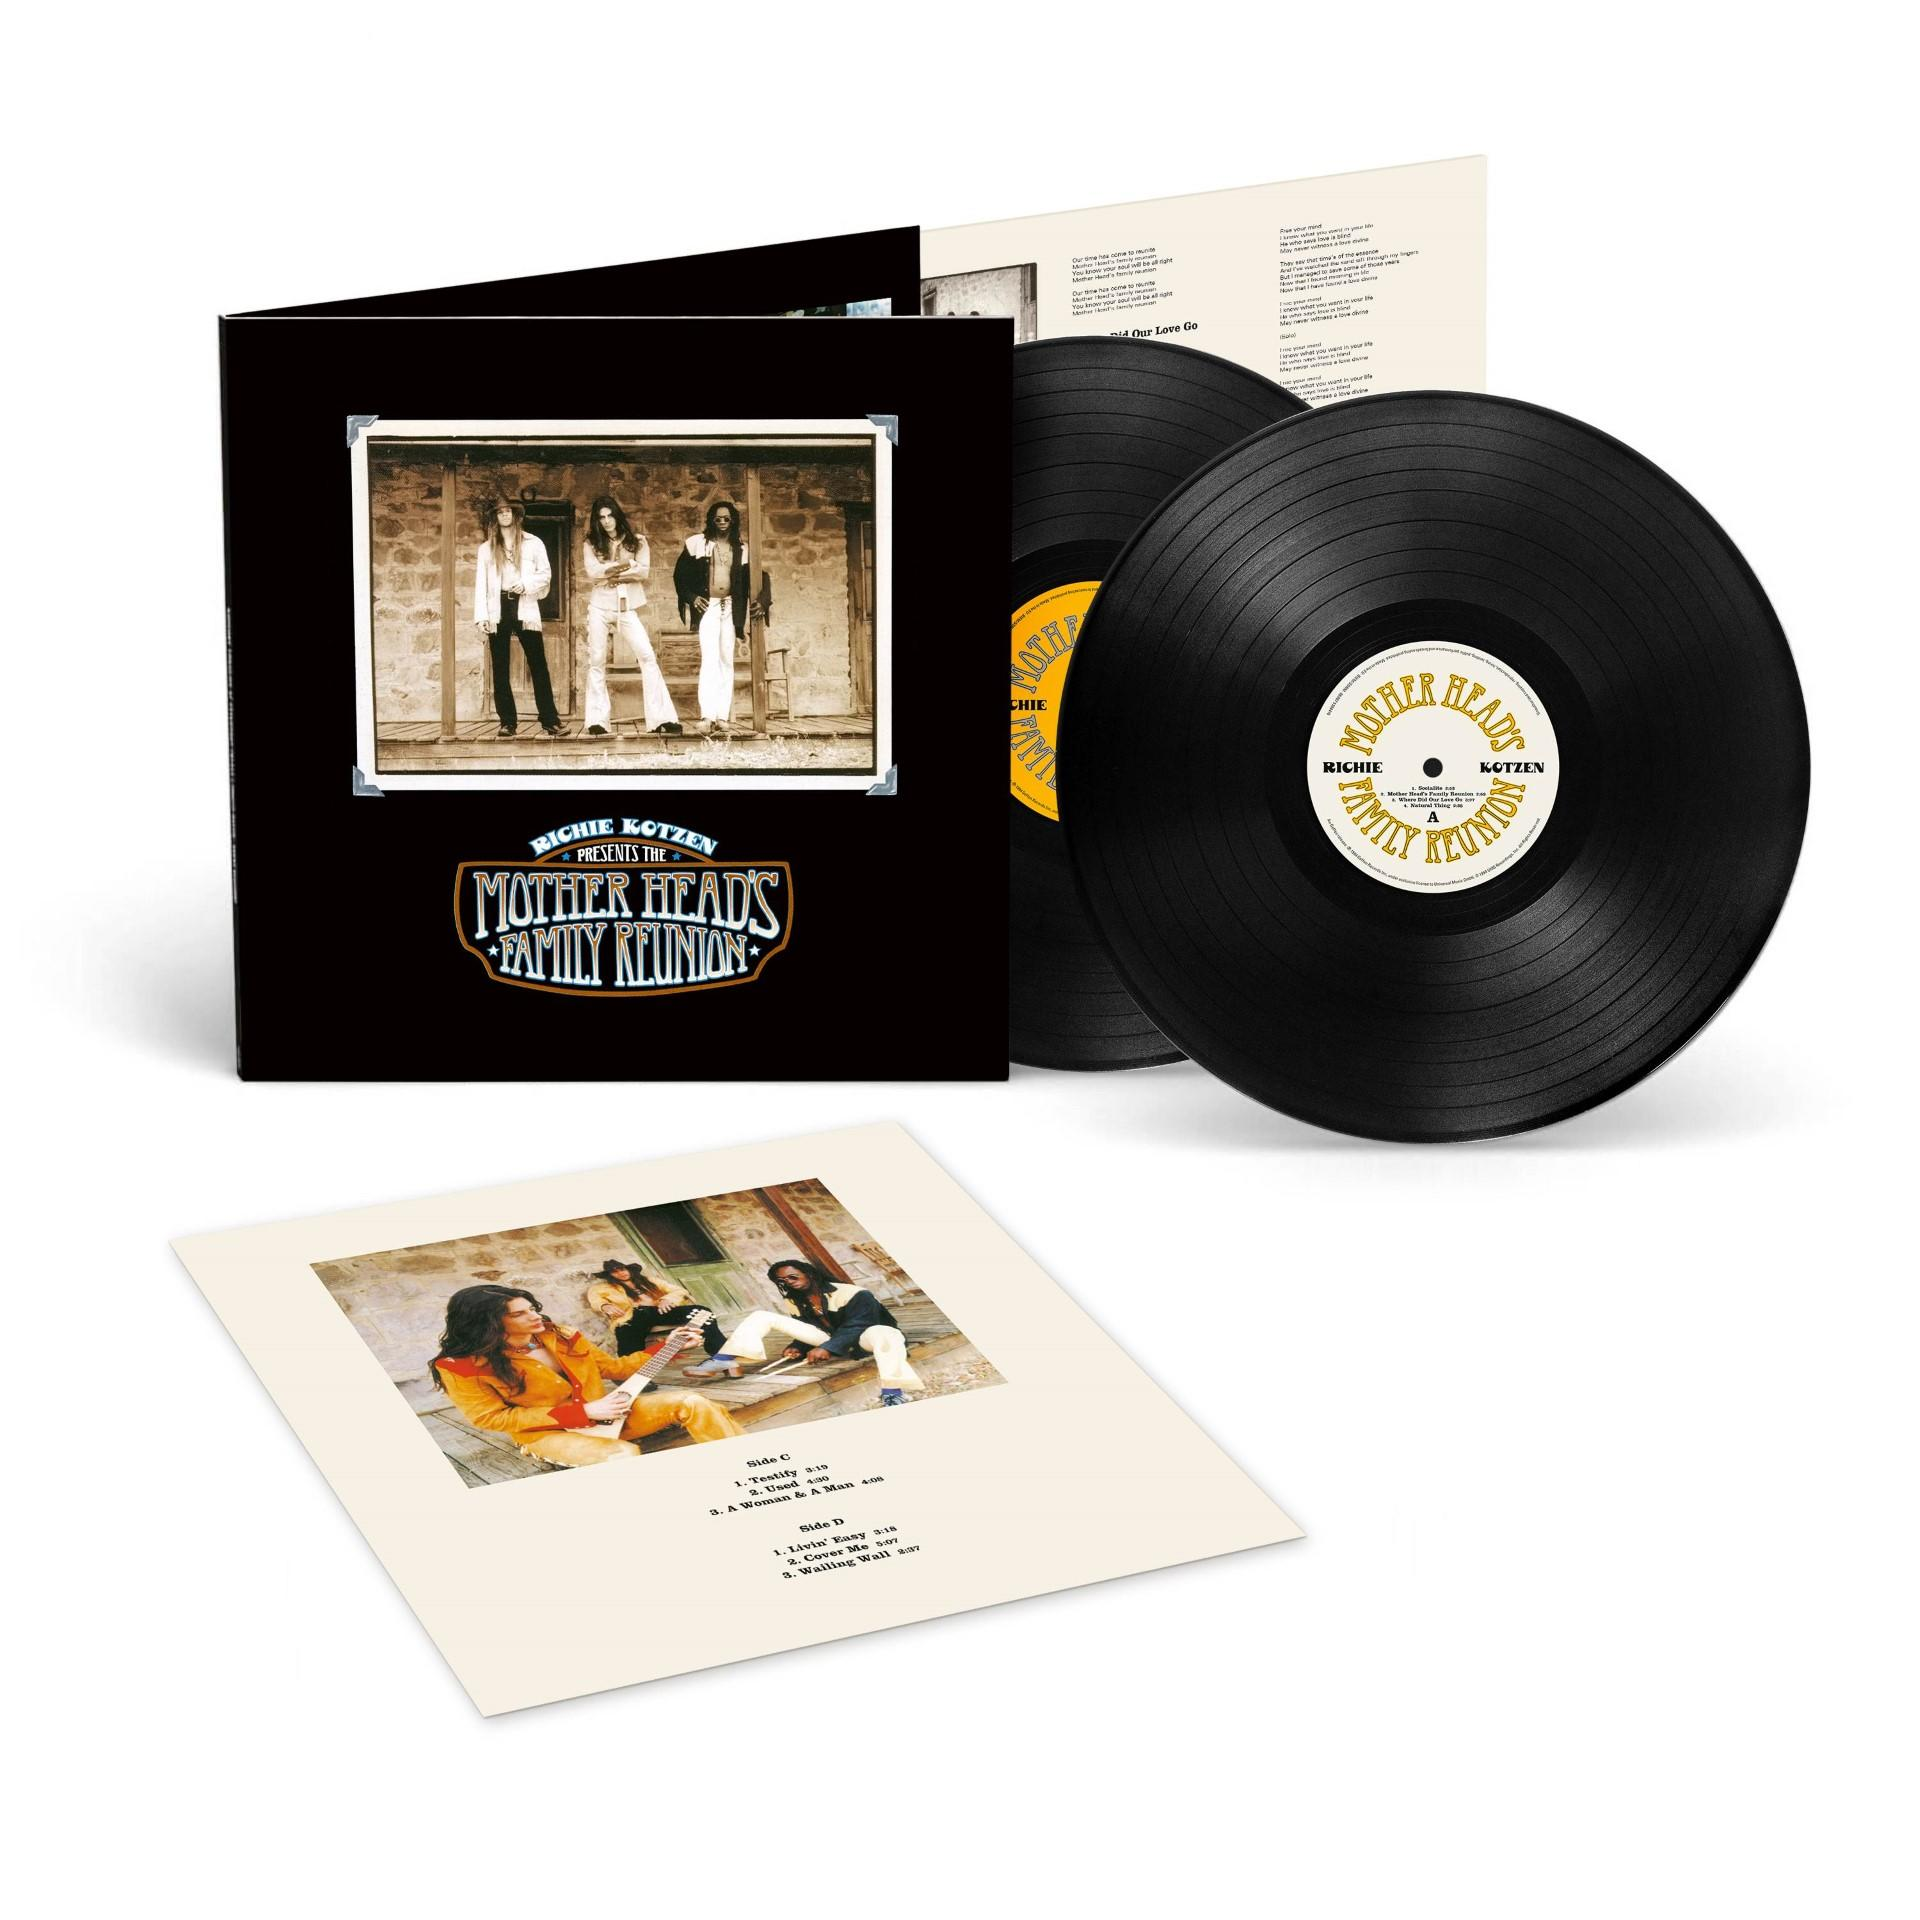 Reunion Edition) (Limitierte 2LP Family Mother Kotzen - (Vinyl) - Richie Head’s